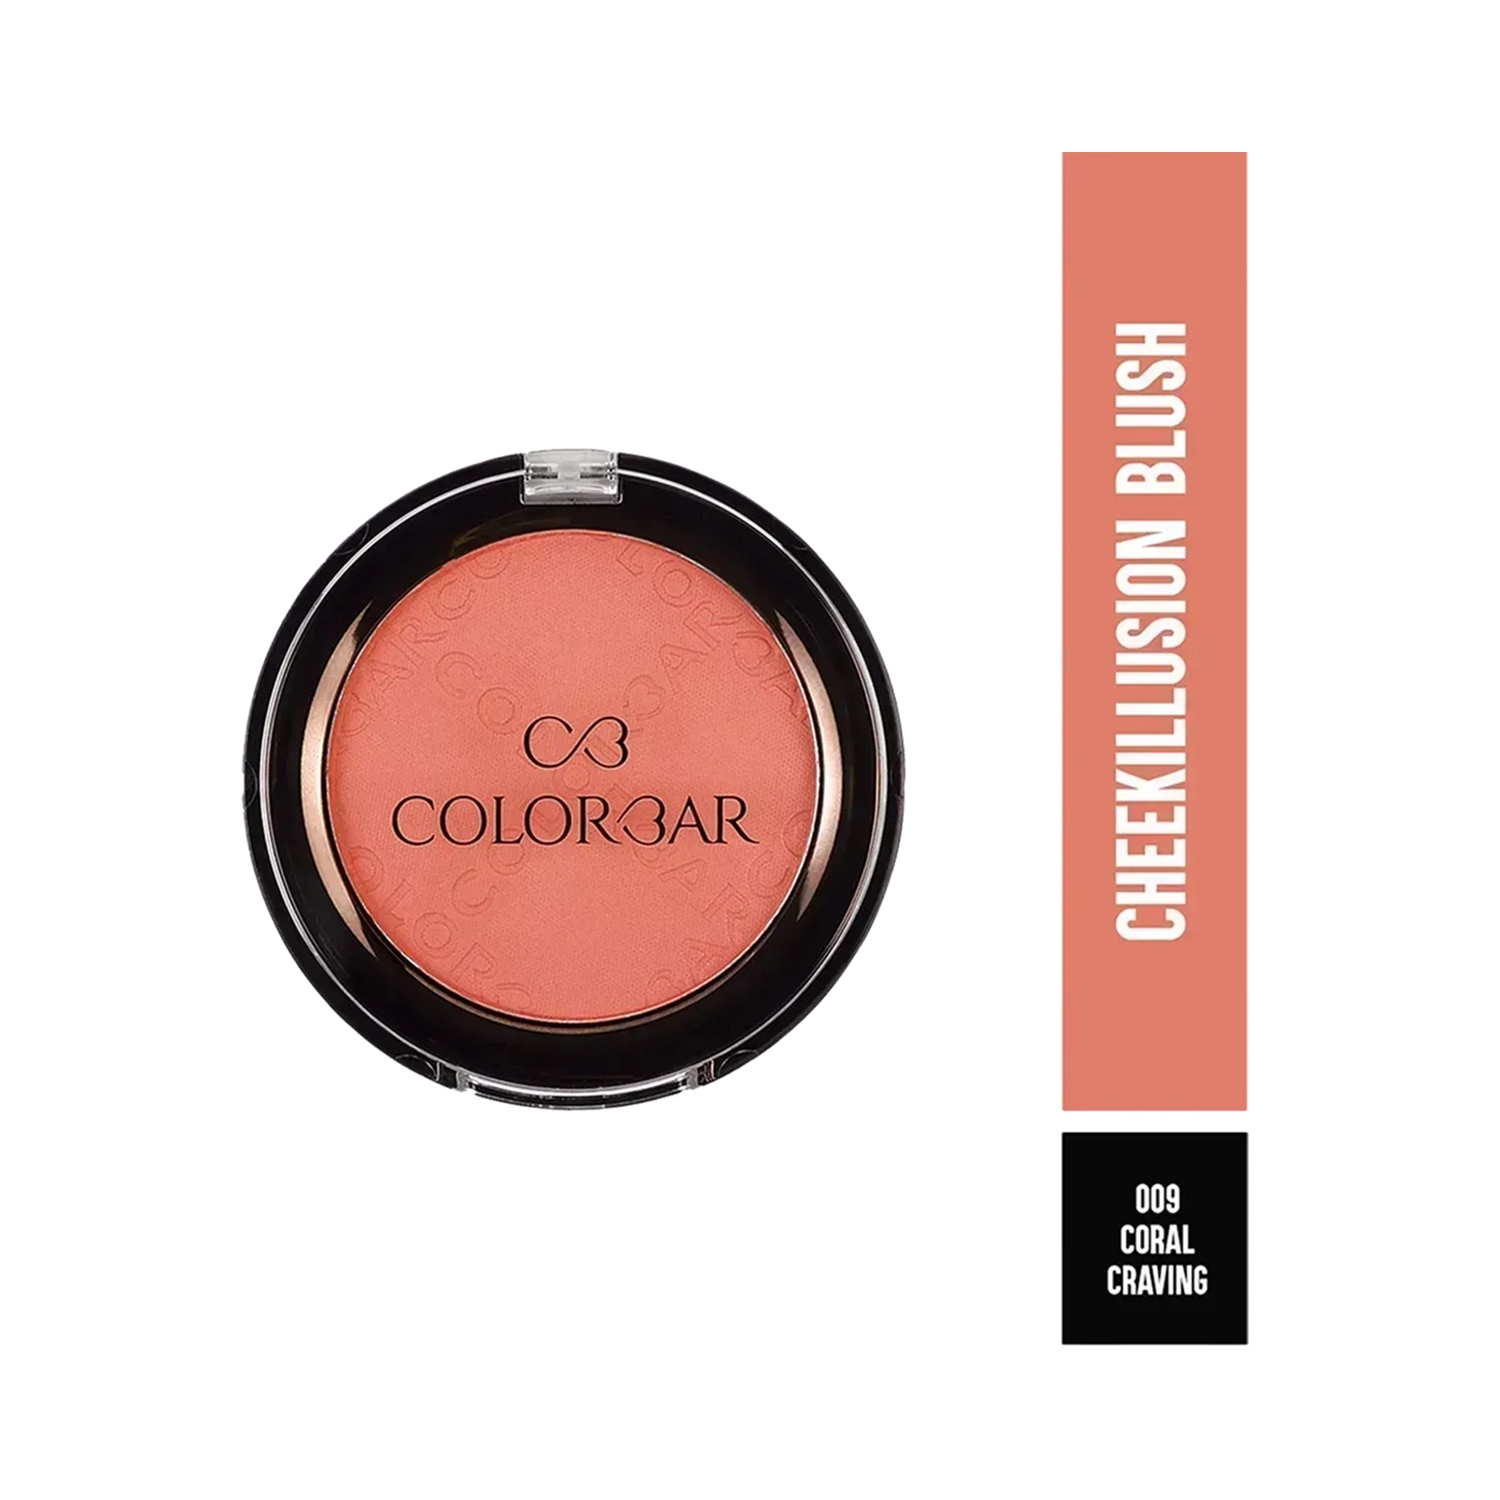 Colorbar | Colorbar Cheekillusion Blush - 009 Coral Craving (4gm)